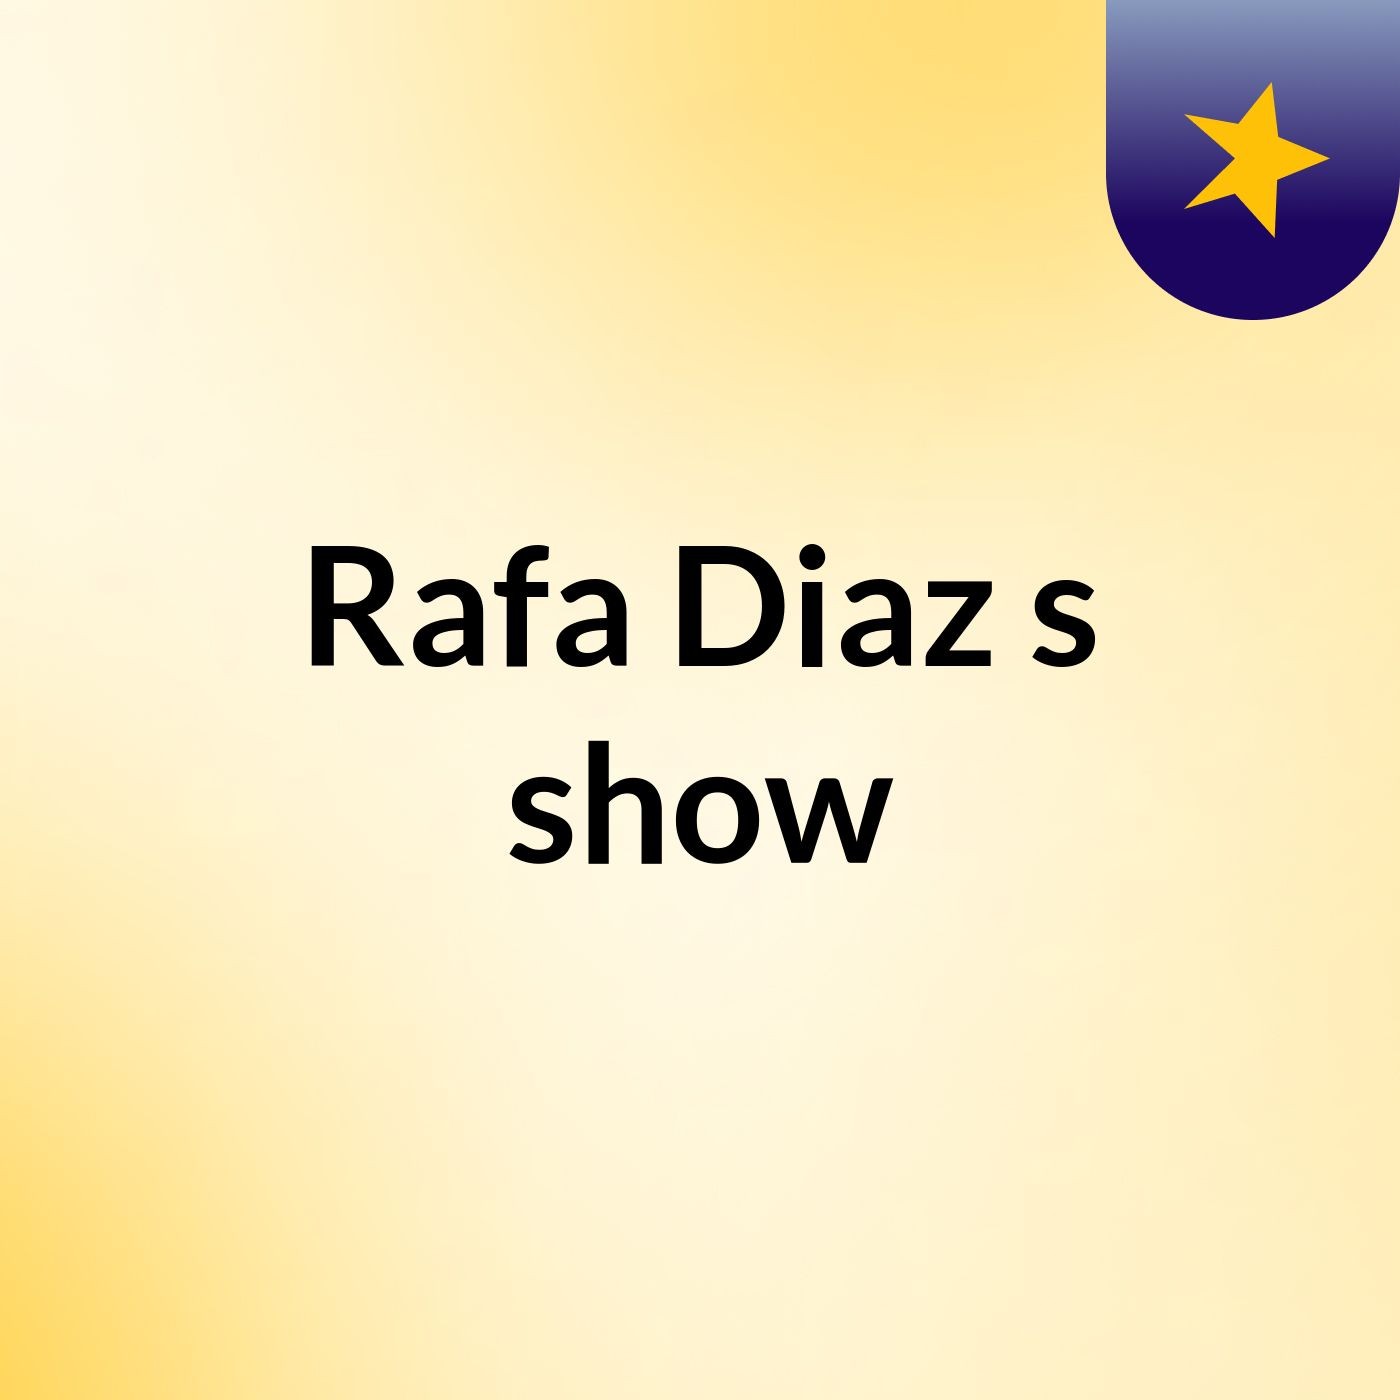 Rafa Diaz's show